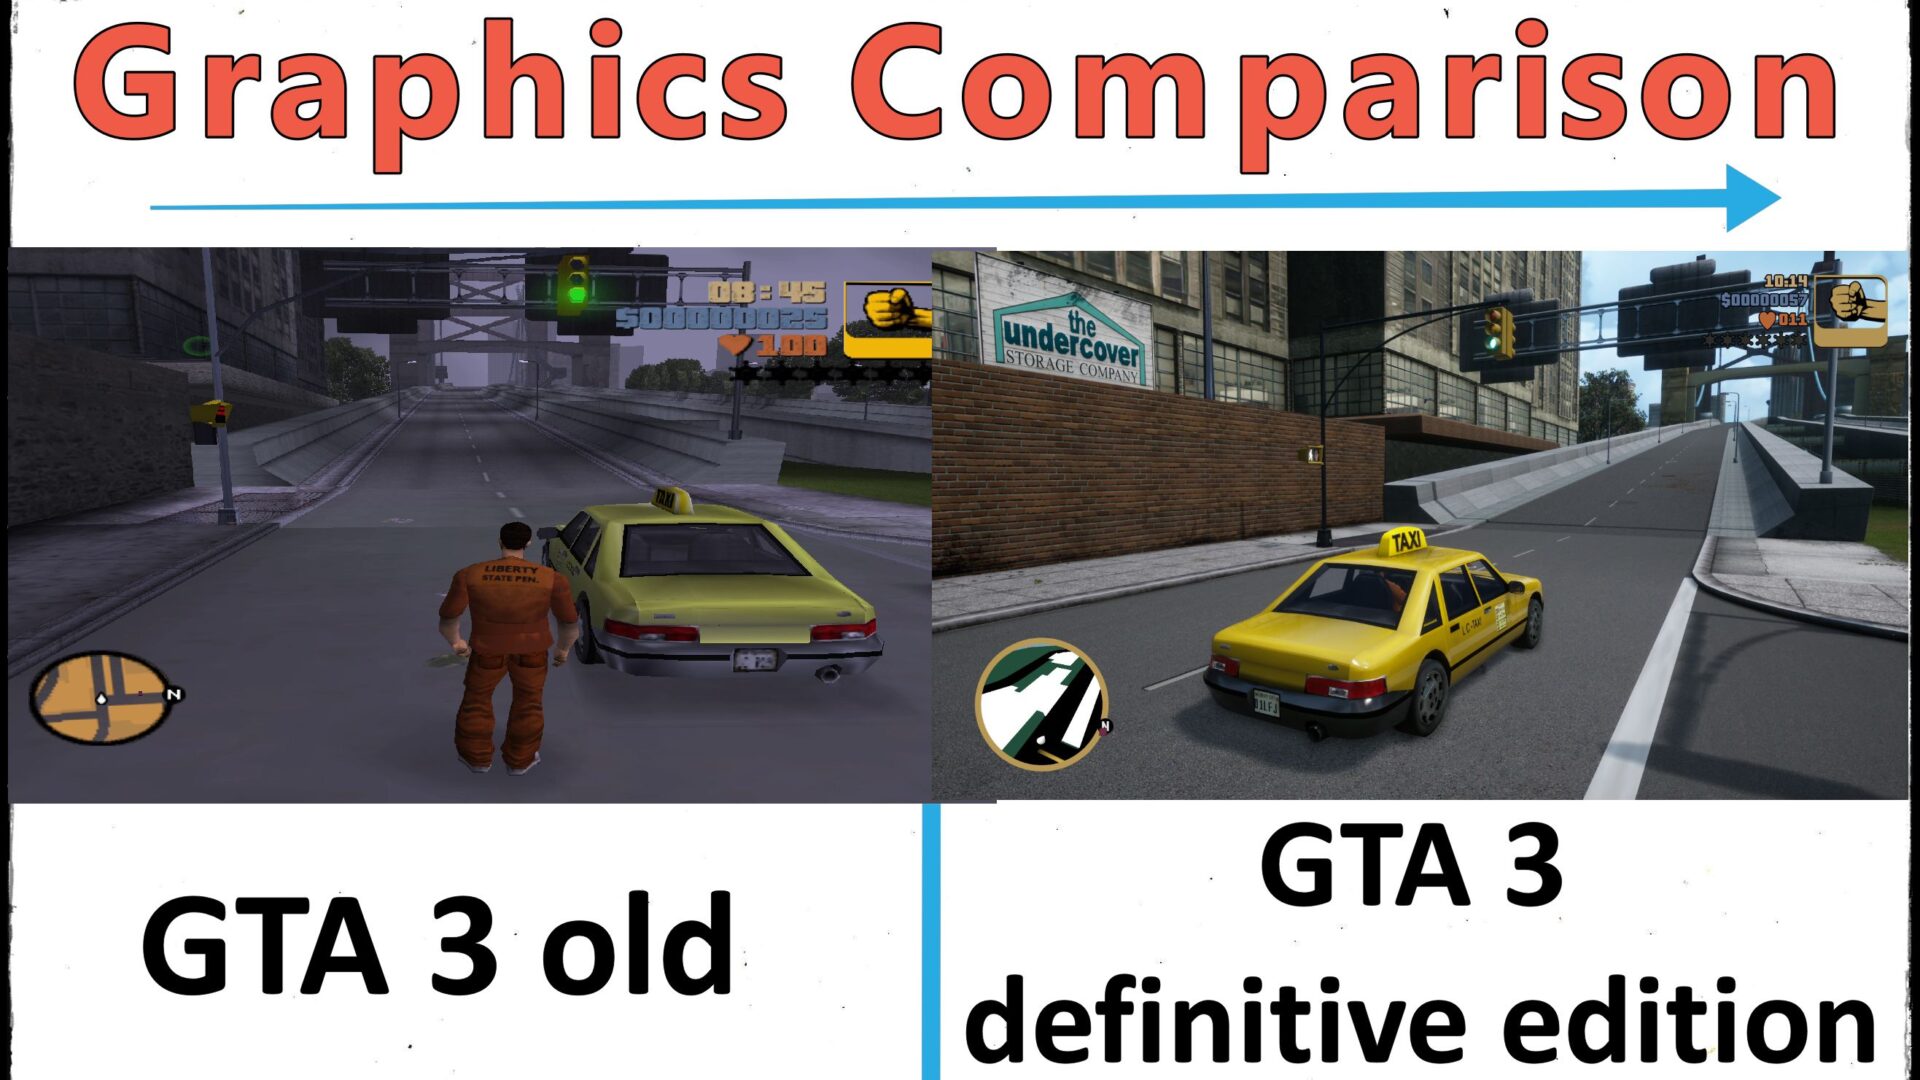 GTA 3 definitive edition vs original /old - Graphics Comparison